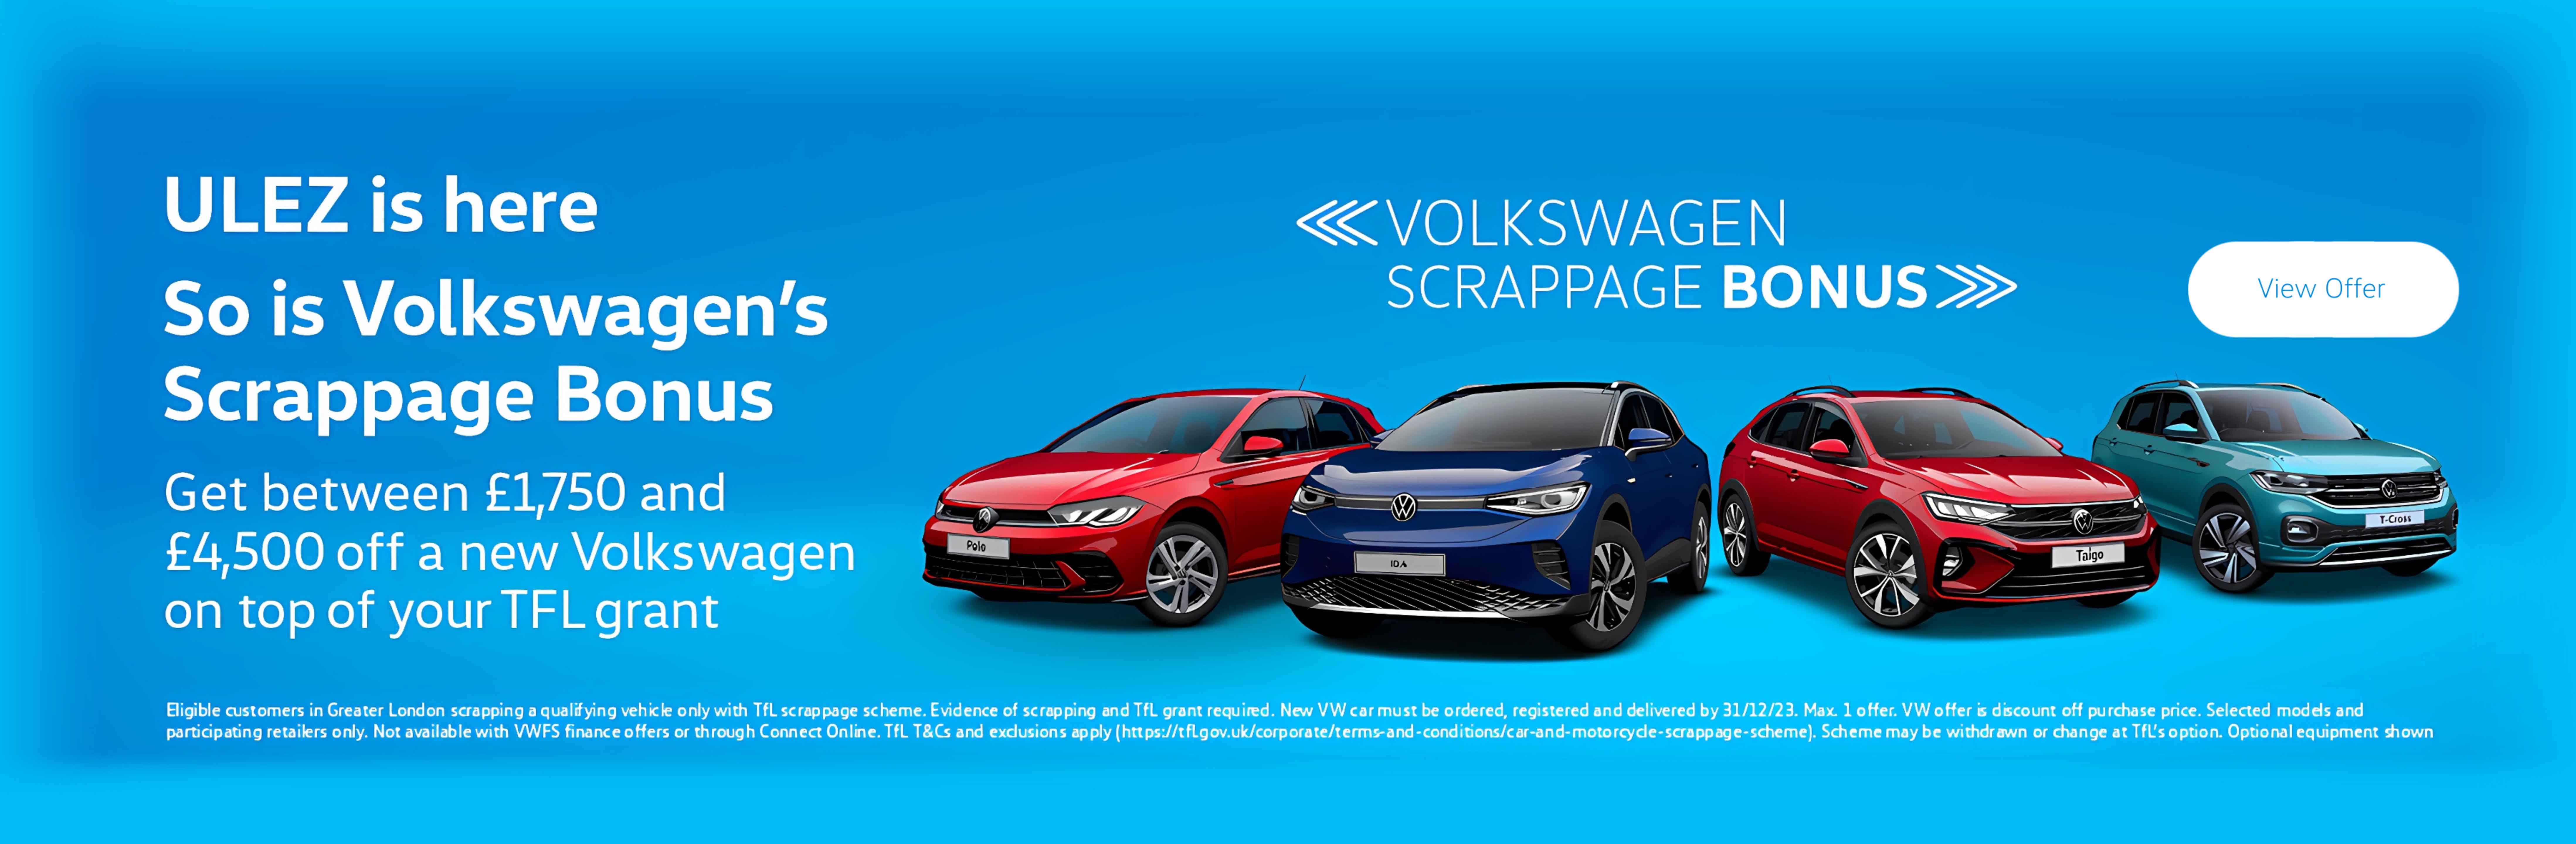 Volkswagen Scrappage Bonus ULEZ